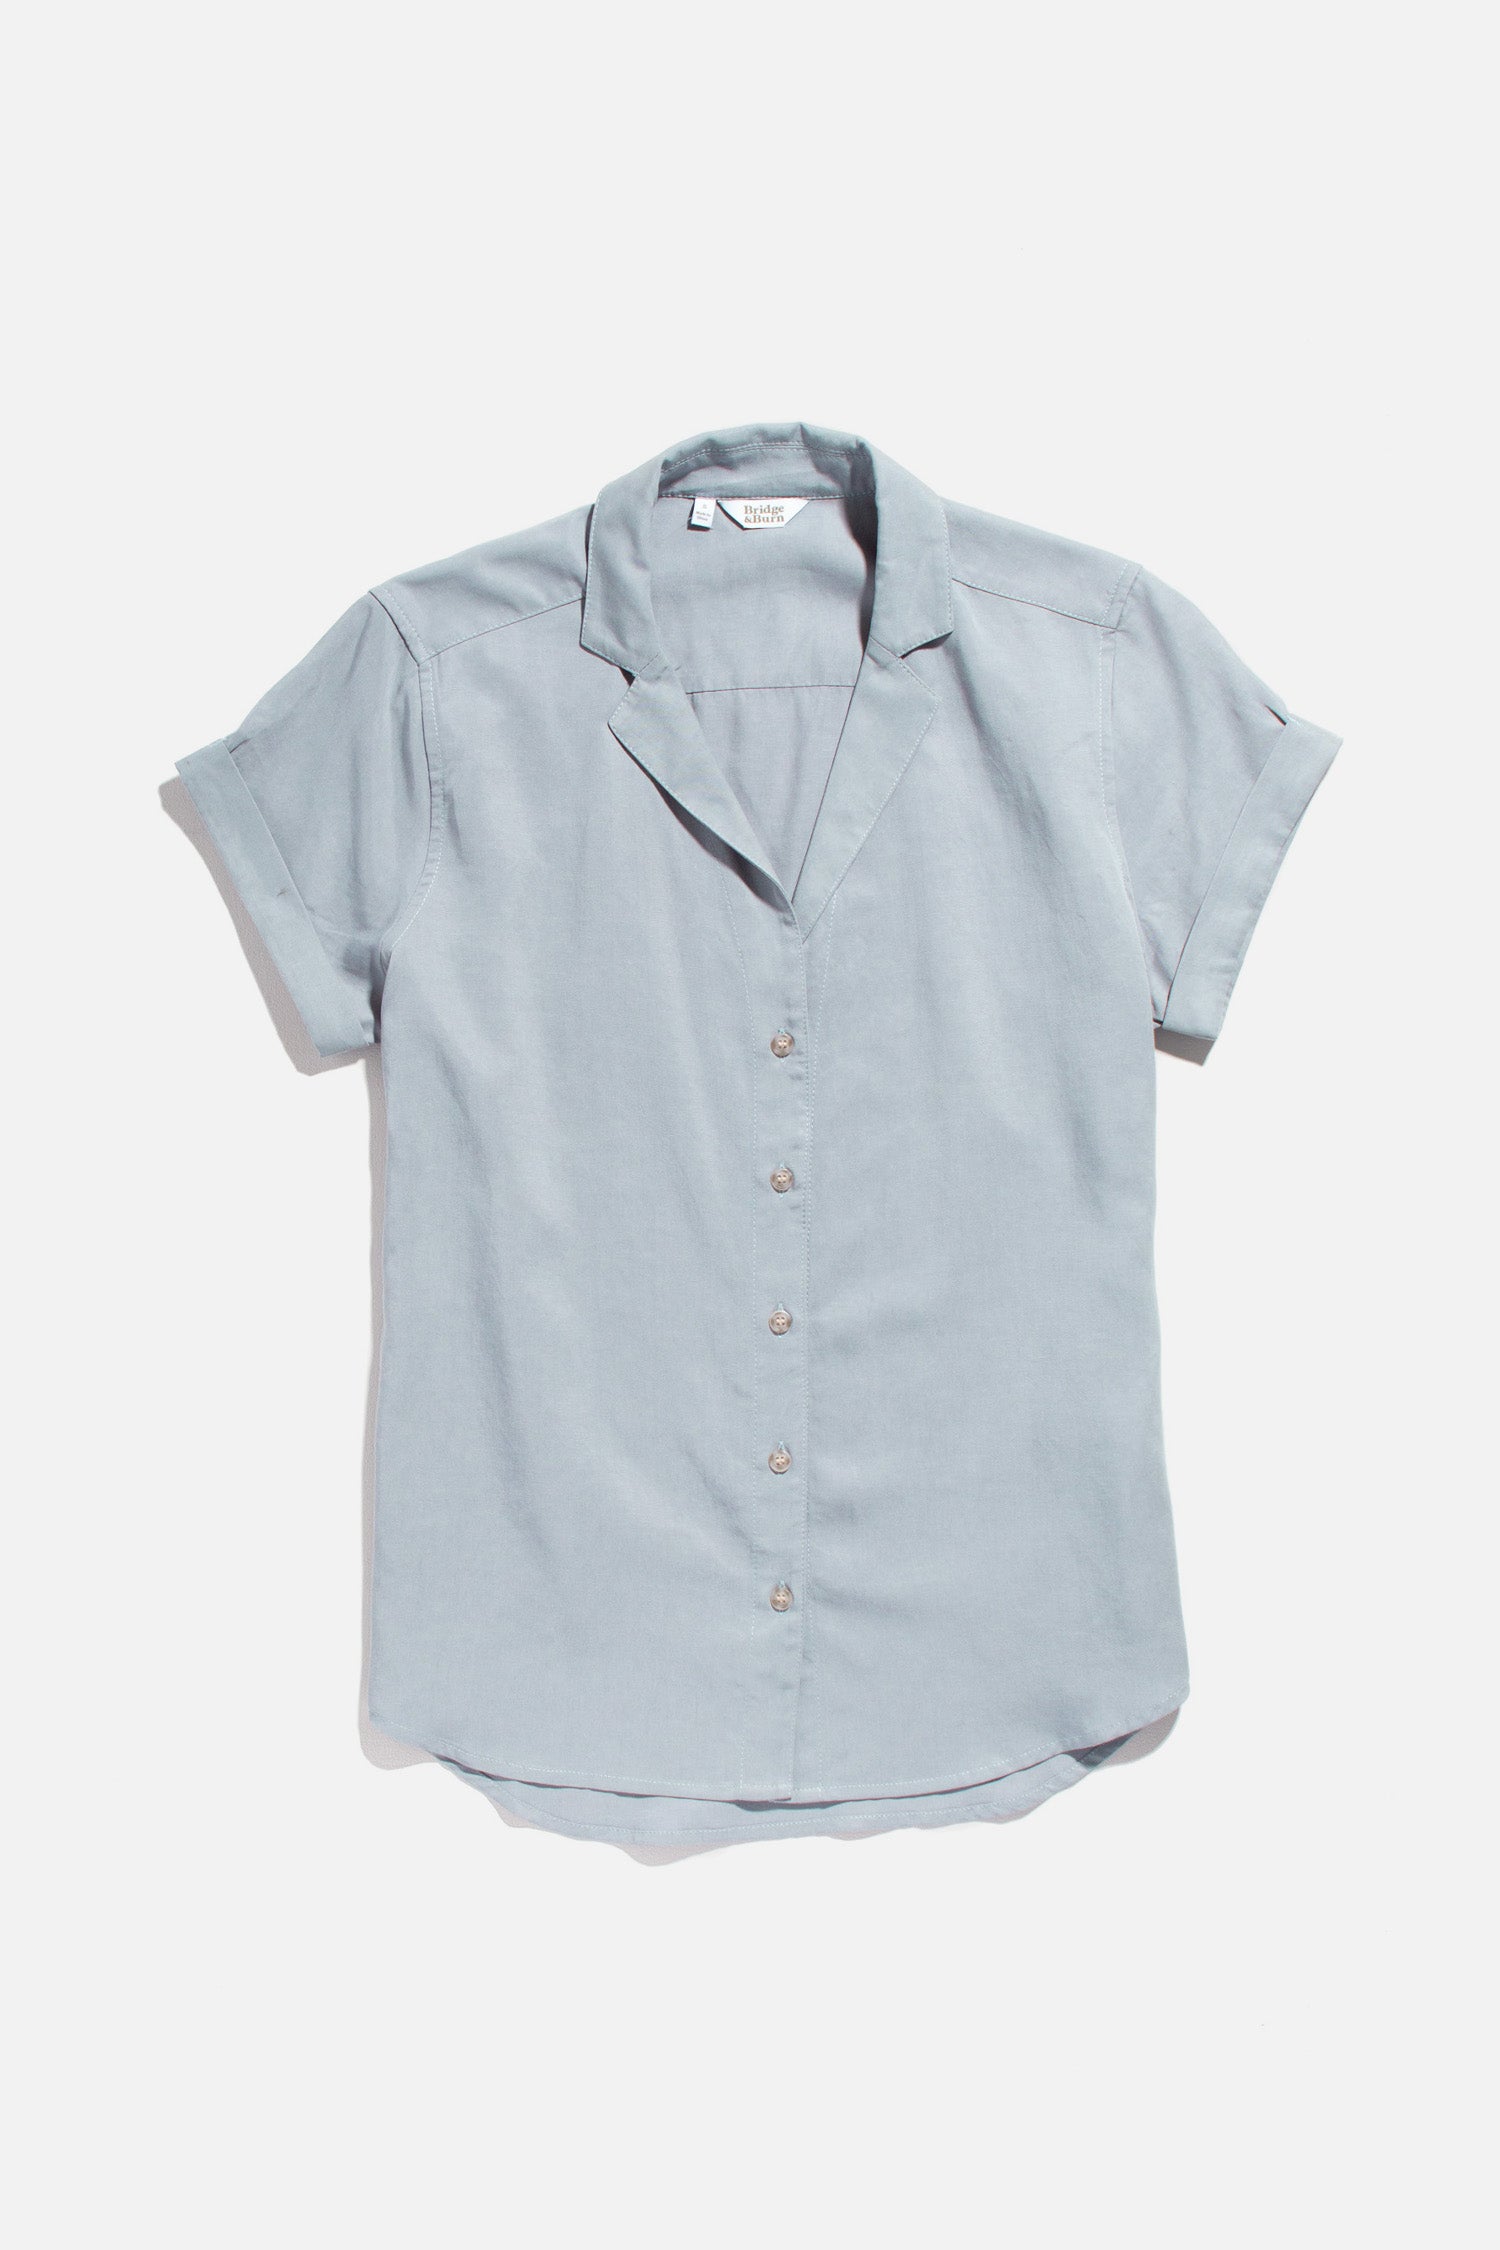 Innes Shirt / Light Blue